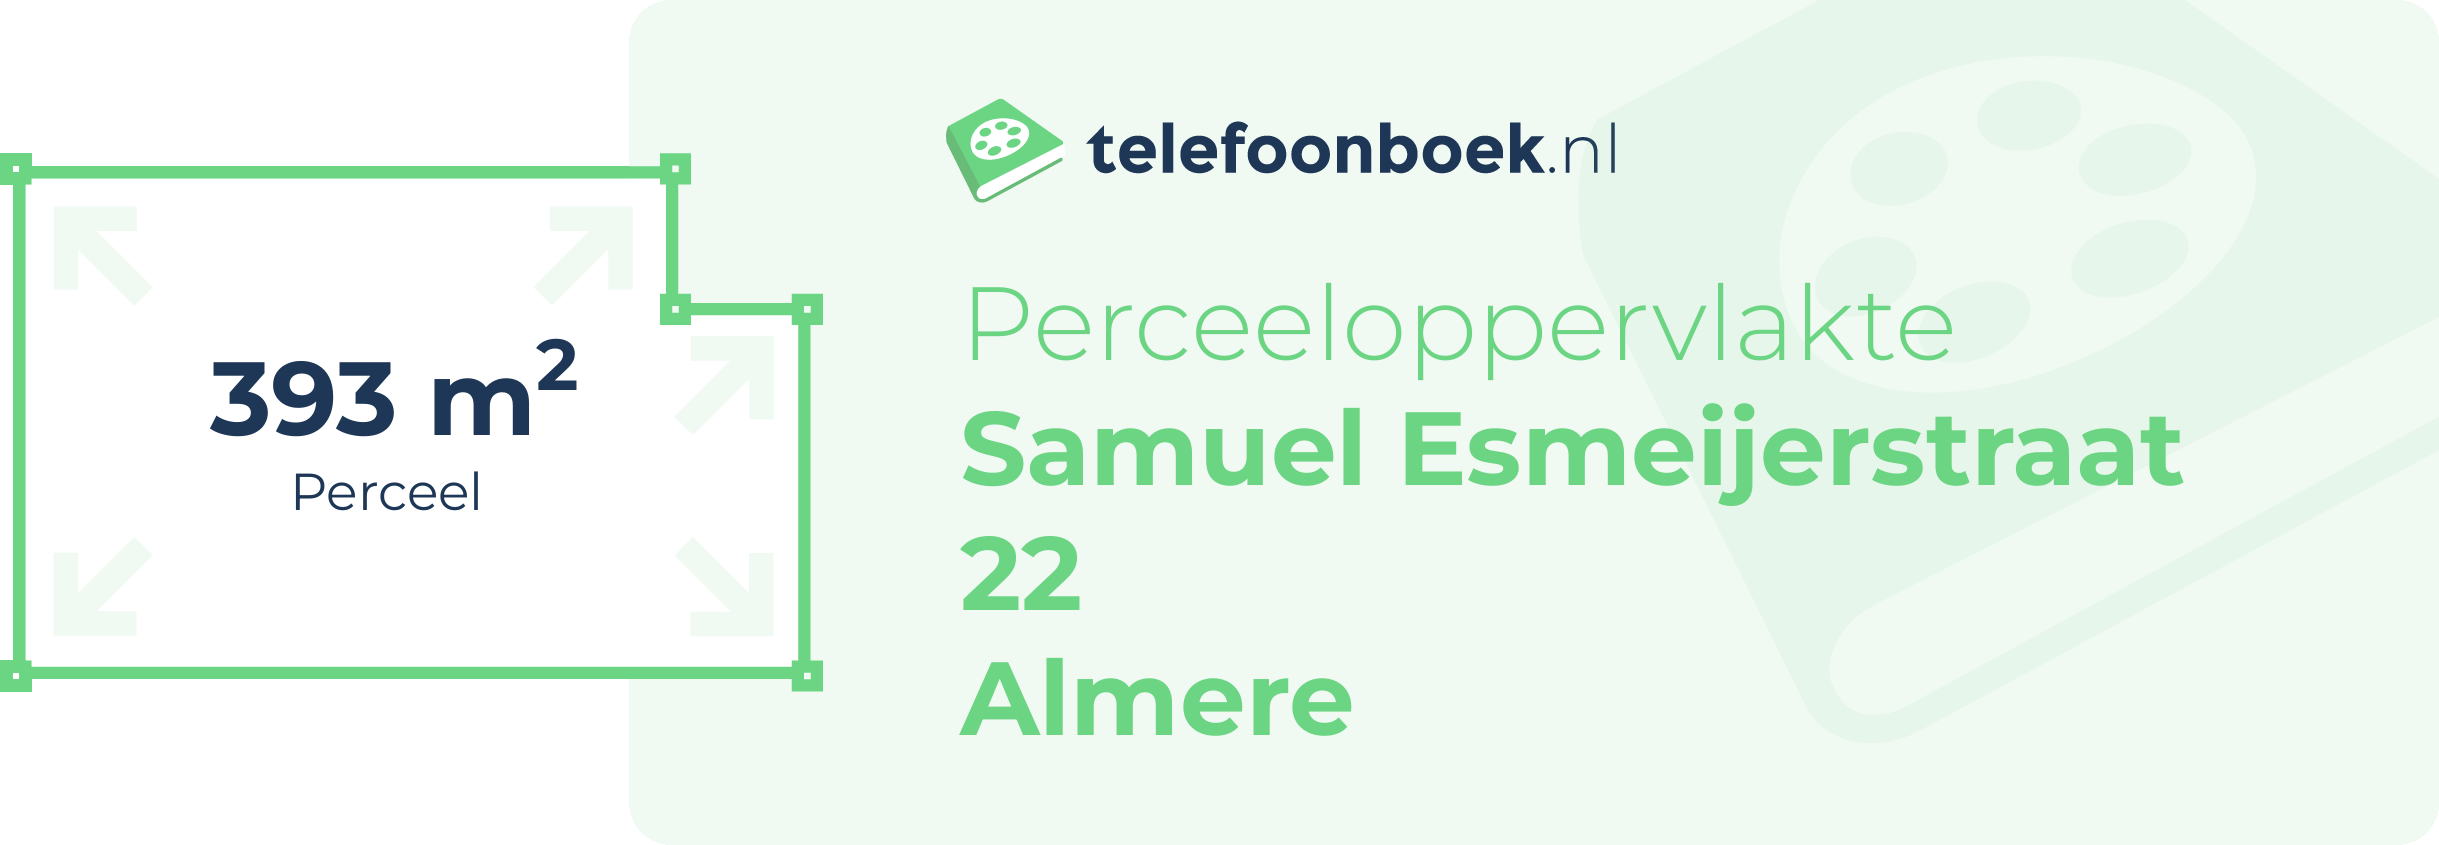 Perceeloppervlakte Samuel Esmeijerstraat 22 Almere